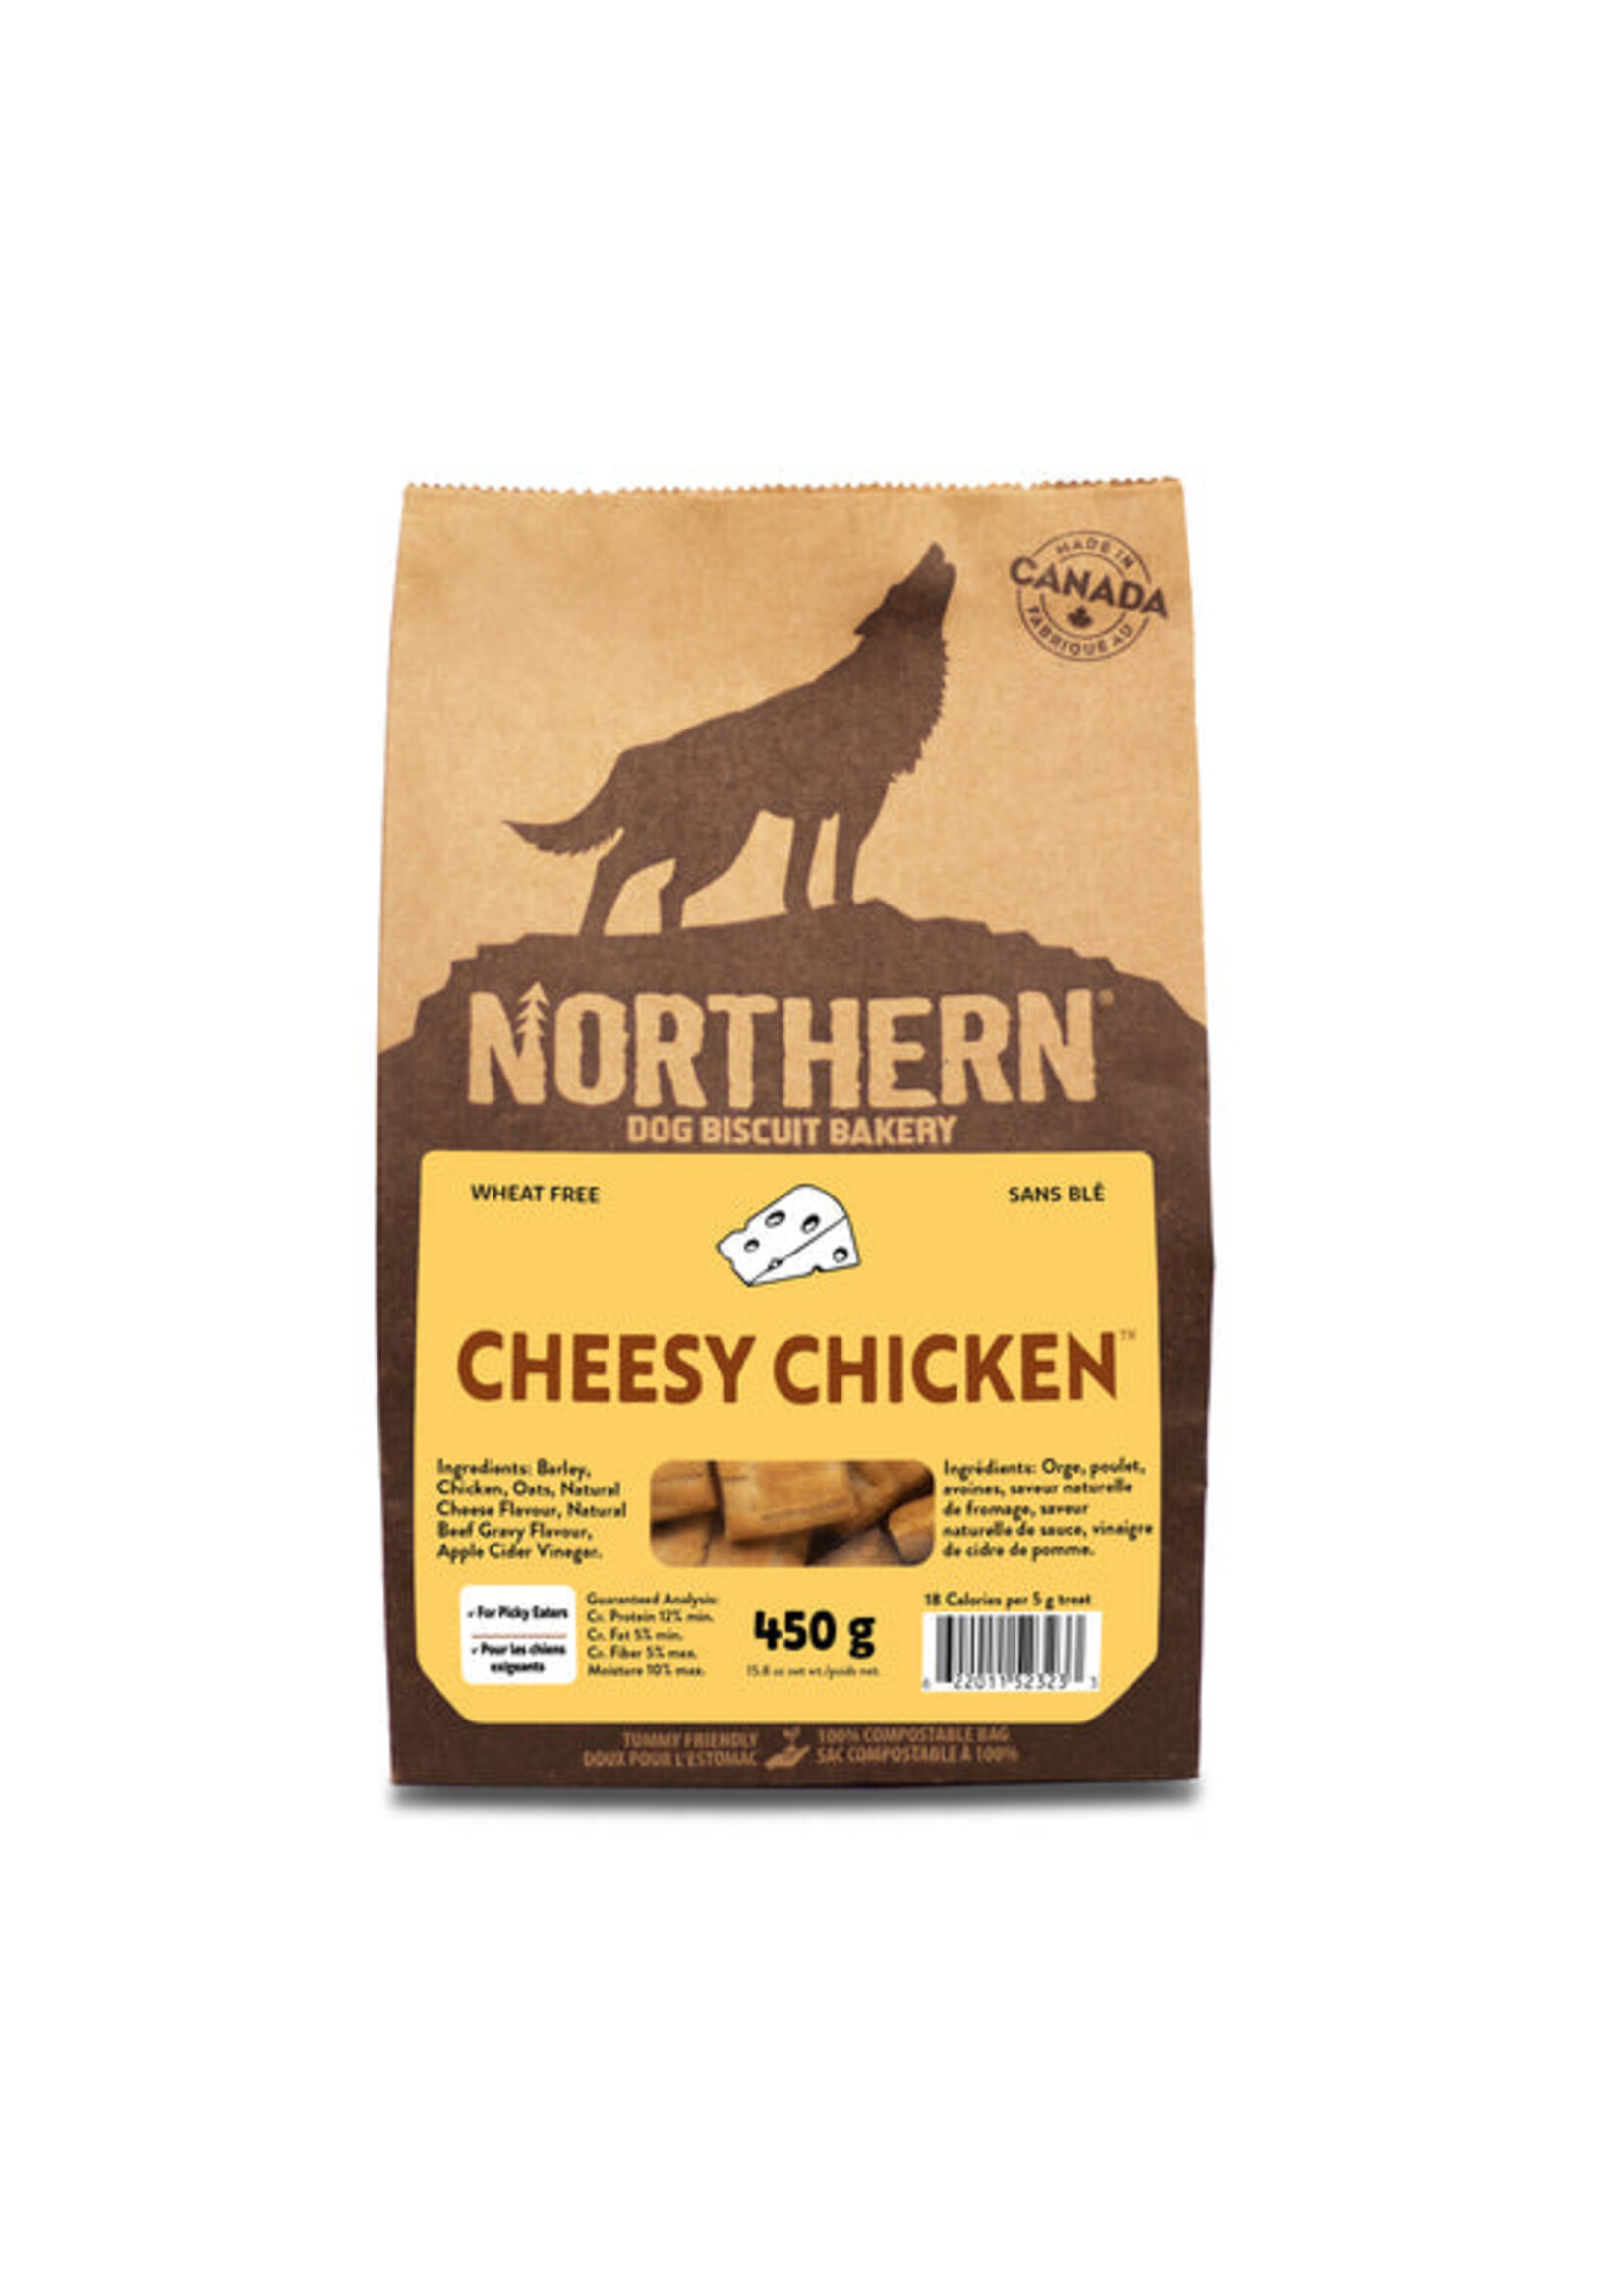 Northern Biscuit WF Cheesy Chicken 450 g / 15.9 oz